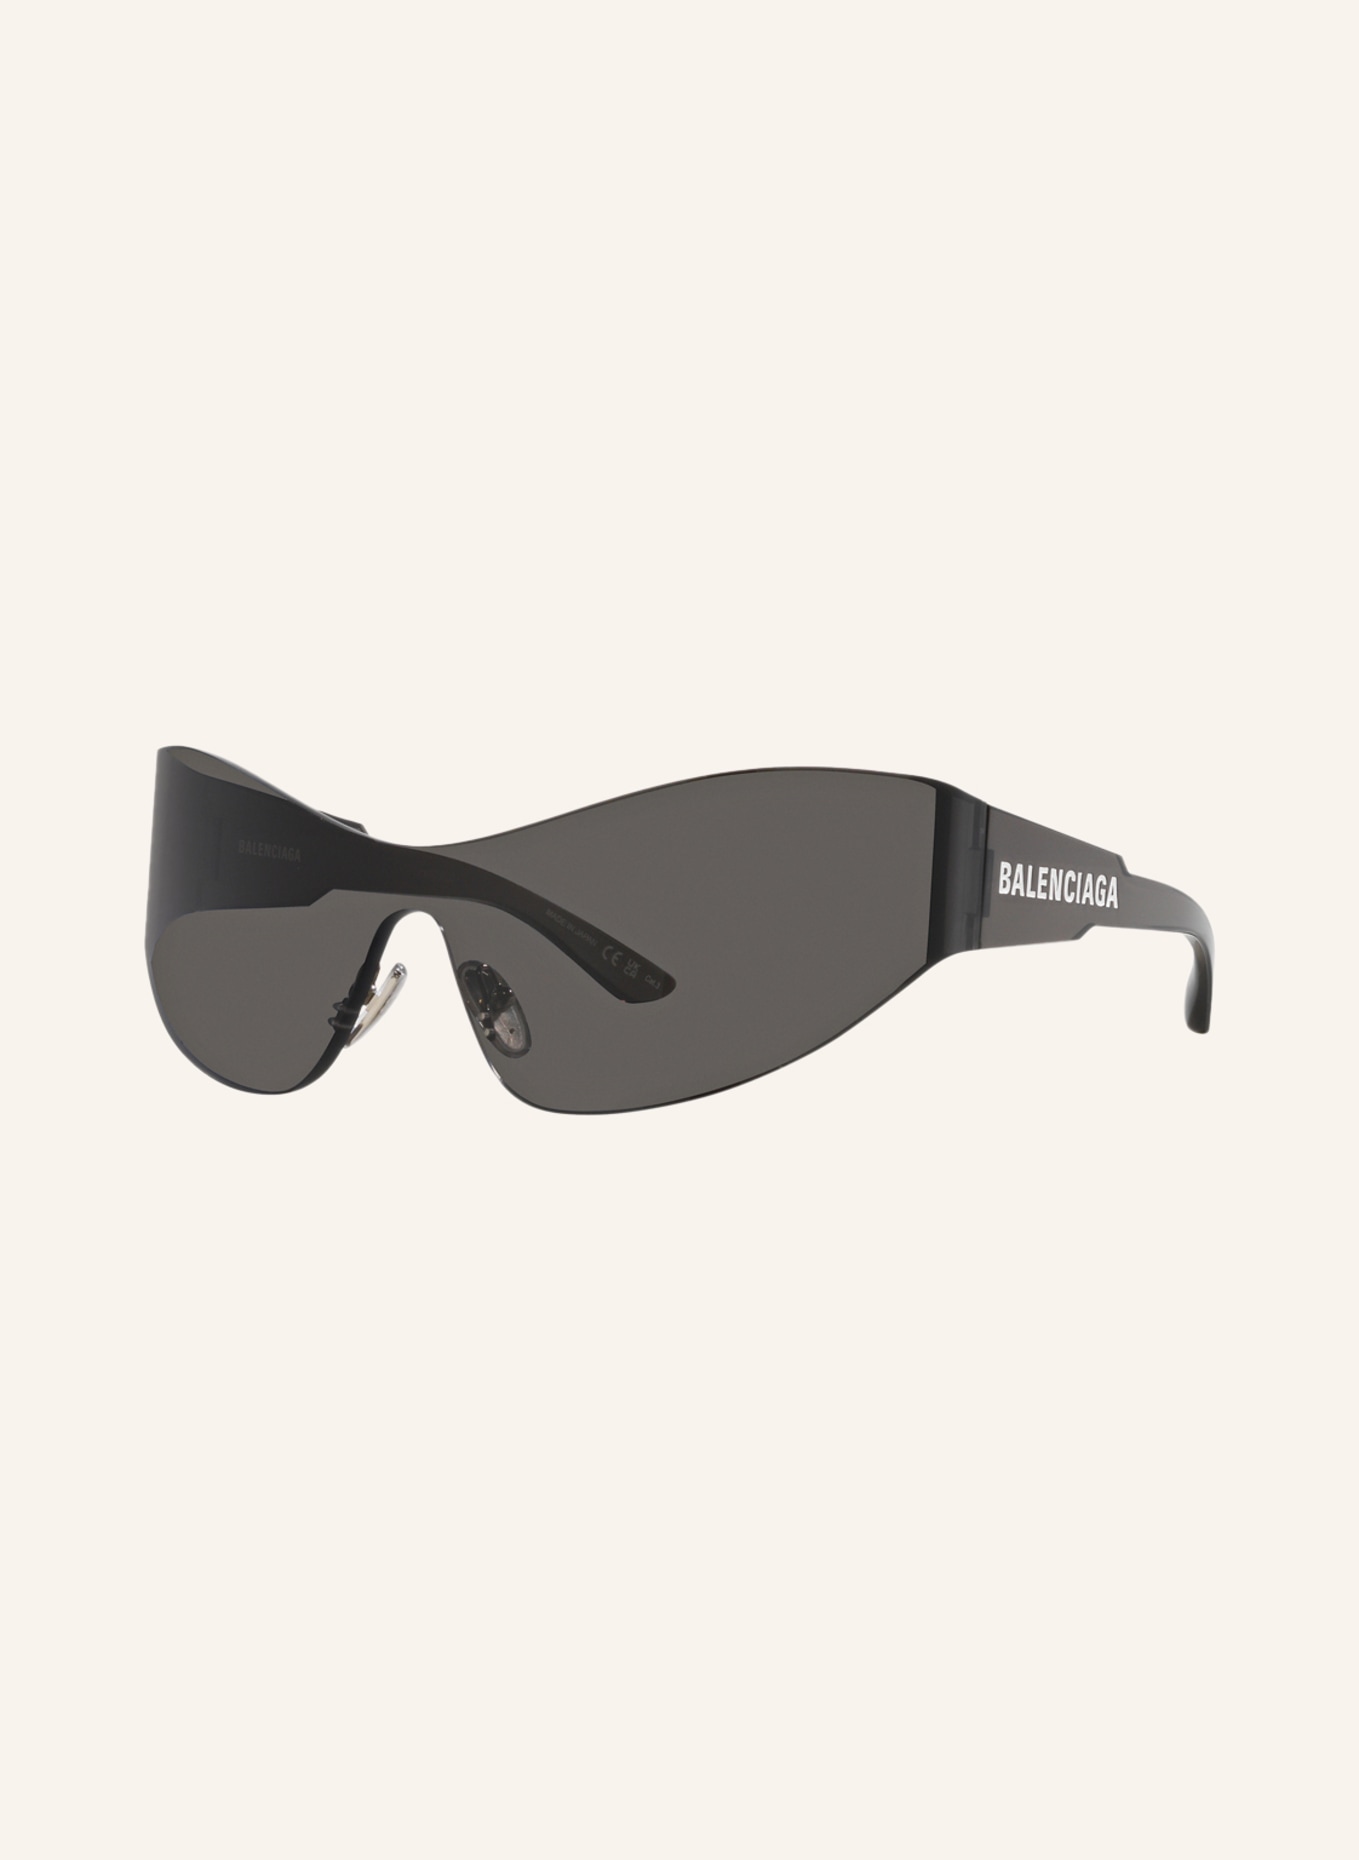 BALENCIAGA Sunglasses BB0257S, Color: 2600L1 - GRAY/ GRAY (Image 1)